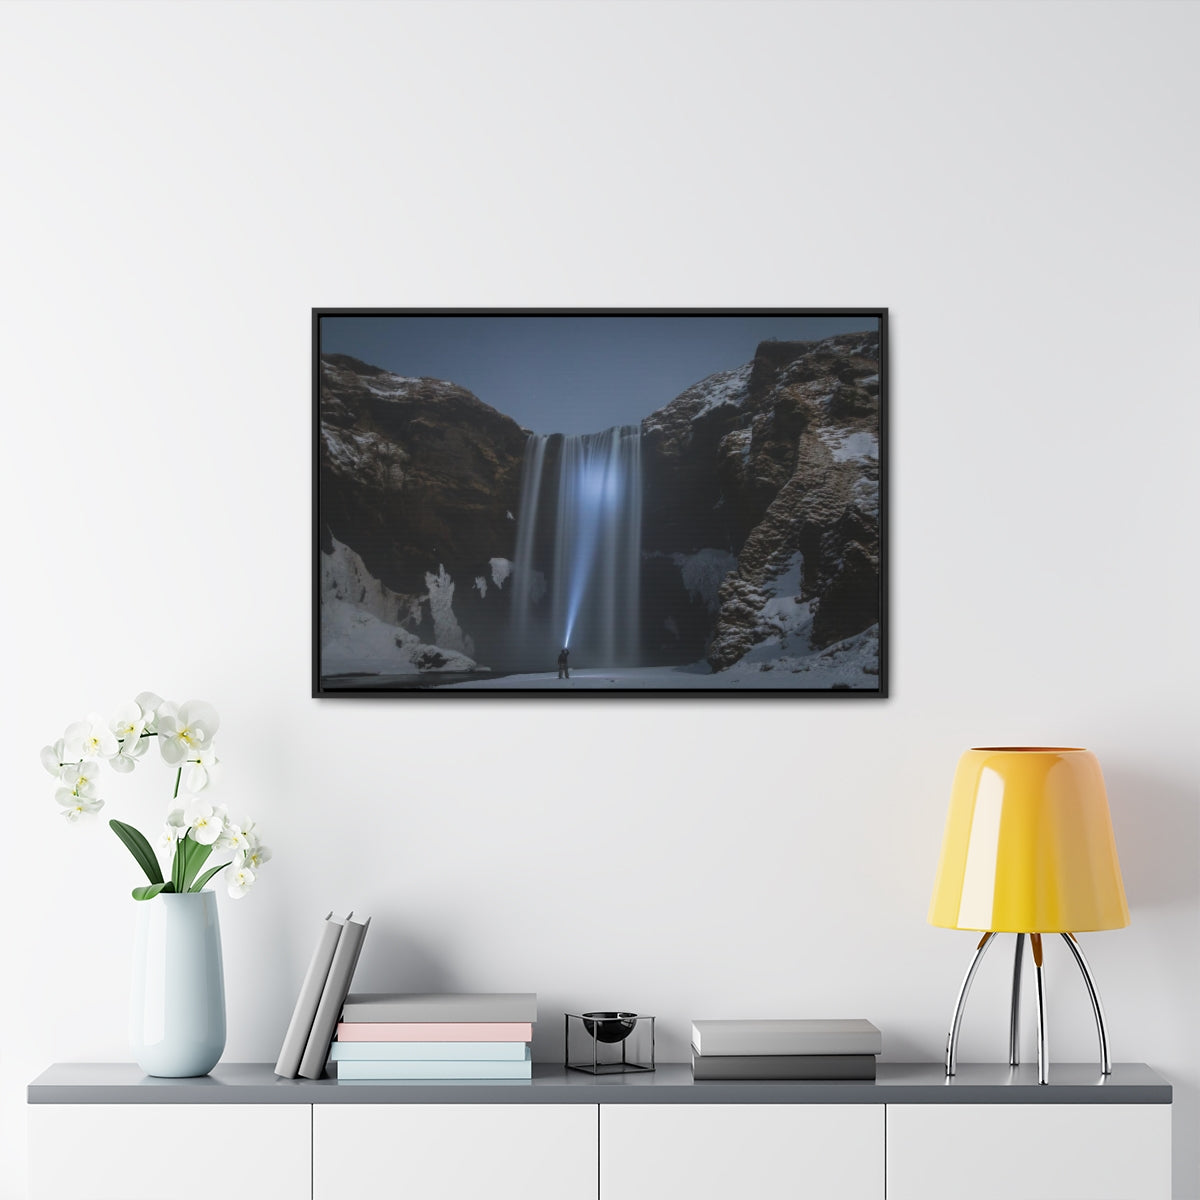 Waterfall at Night Canvas Print